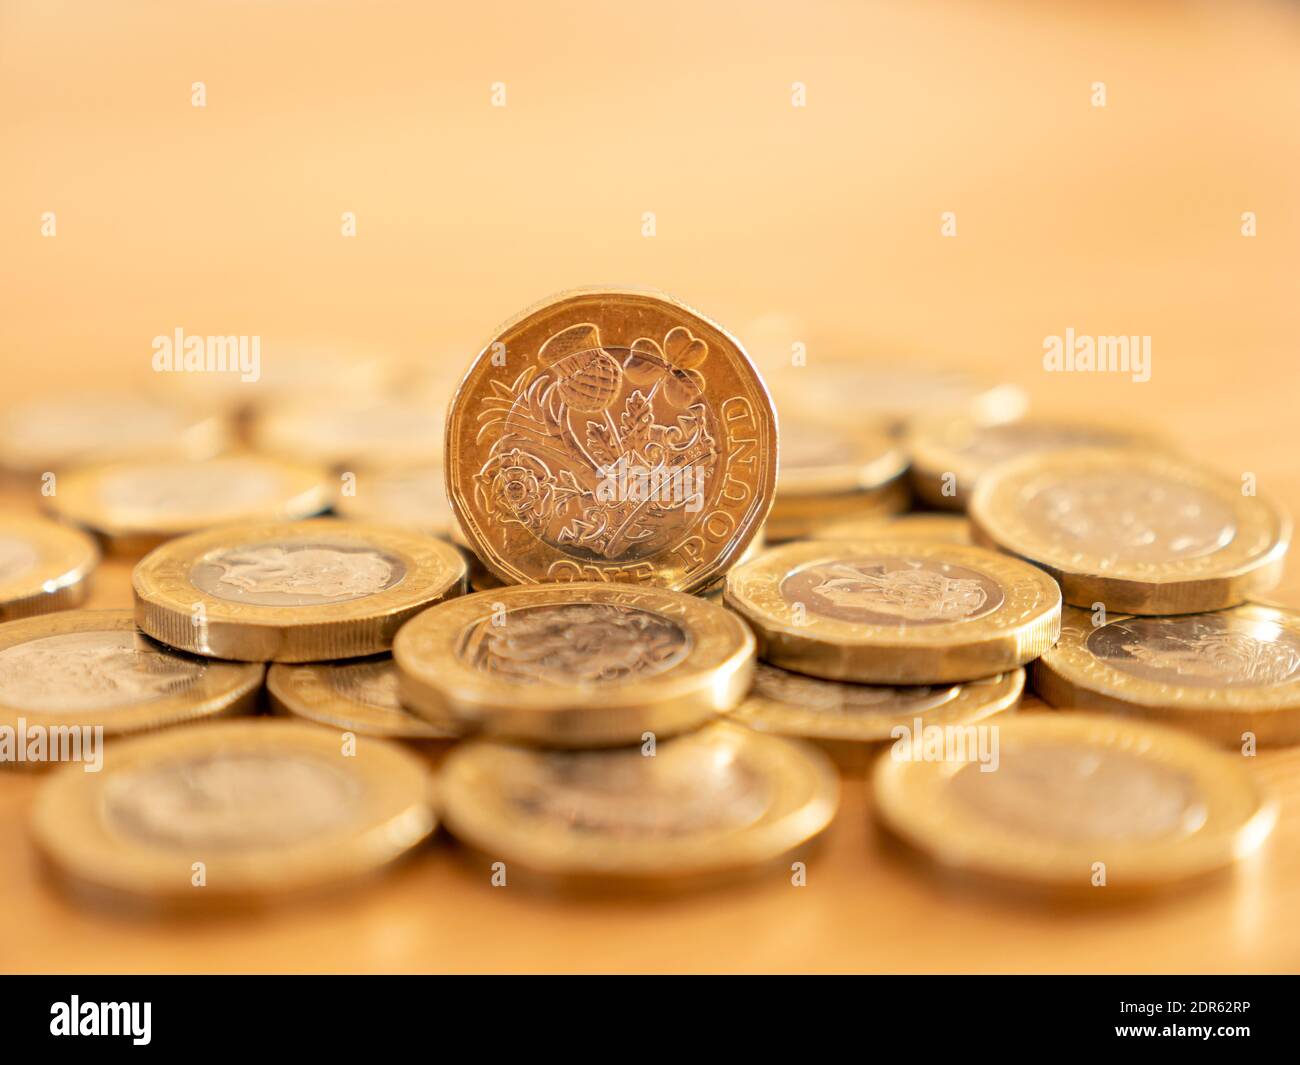 Primo piano di molte monete da 1 sterlina sulla superficie del tavolo, Regno Unito Foto Stock